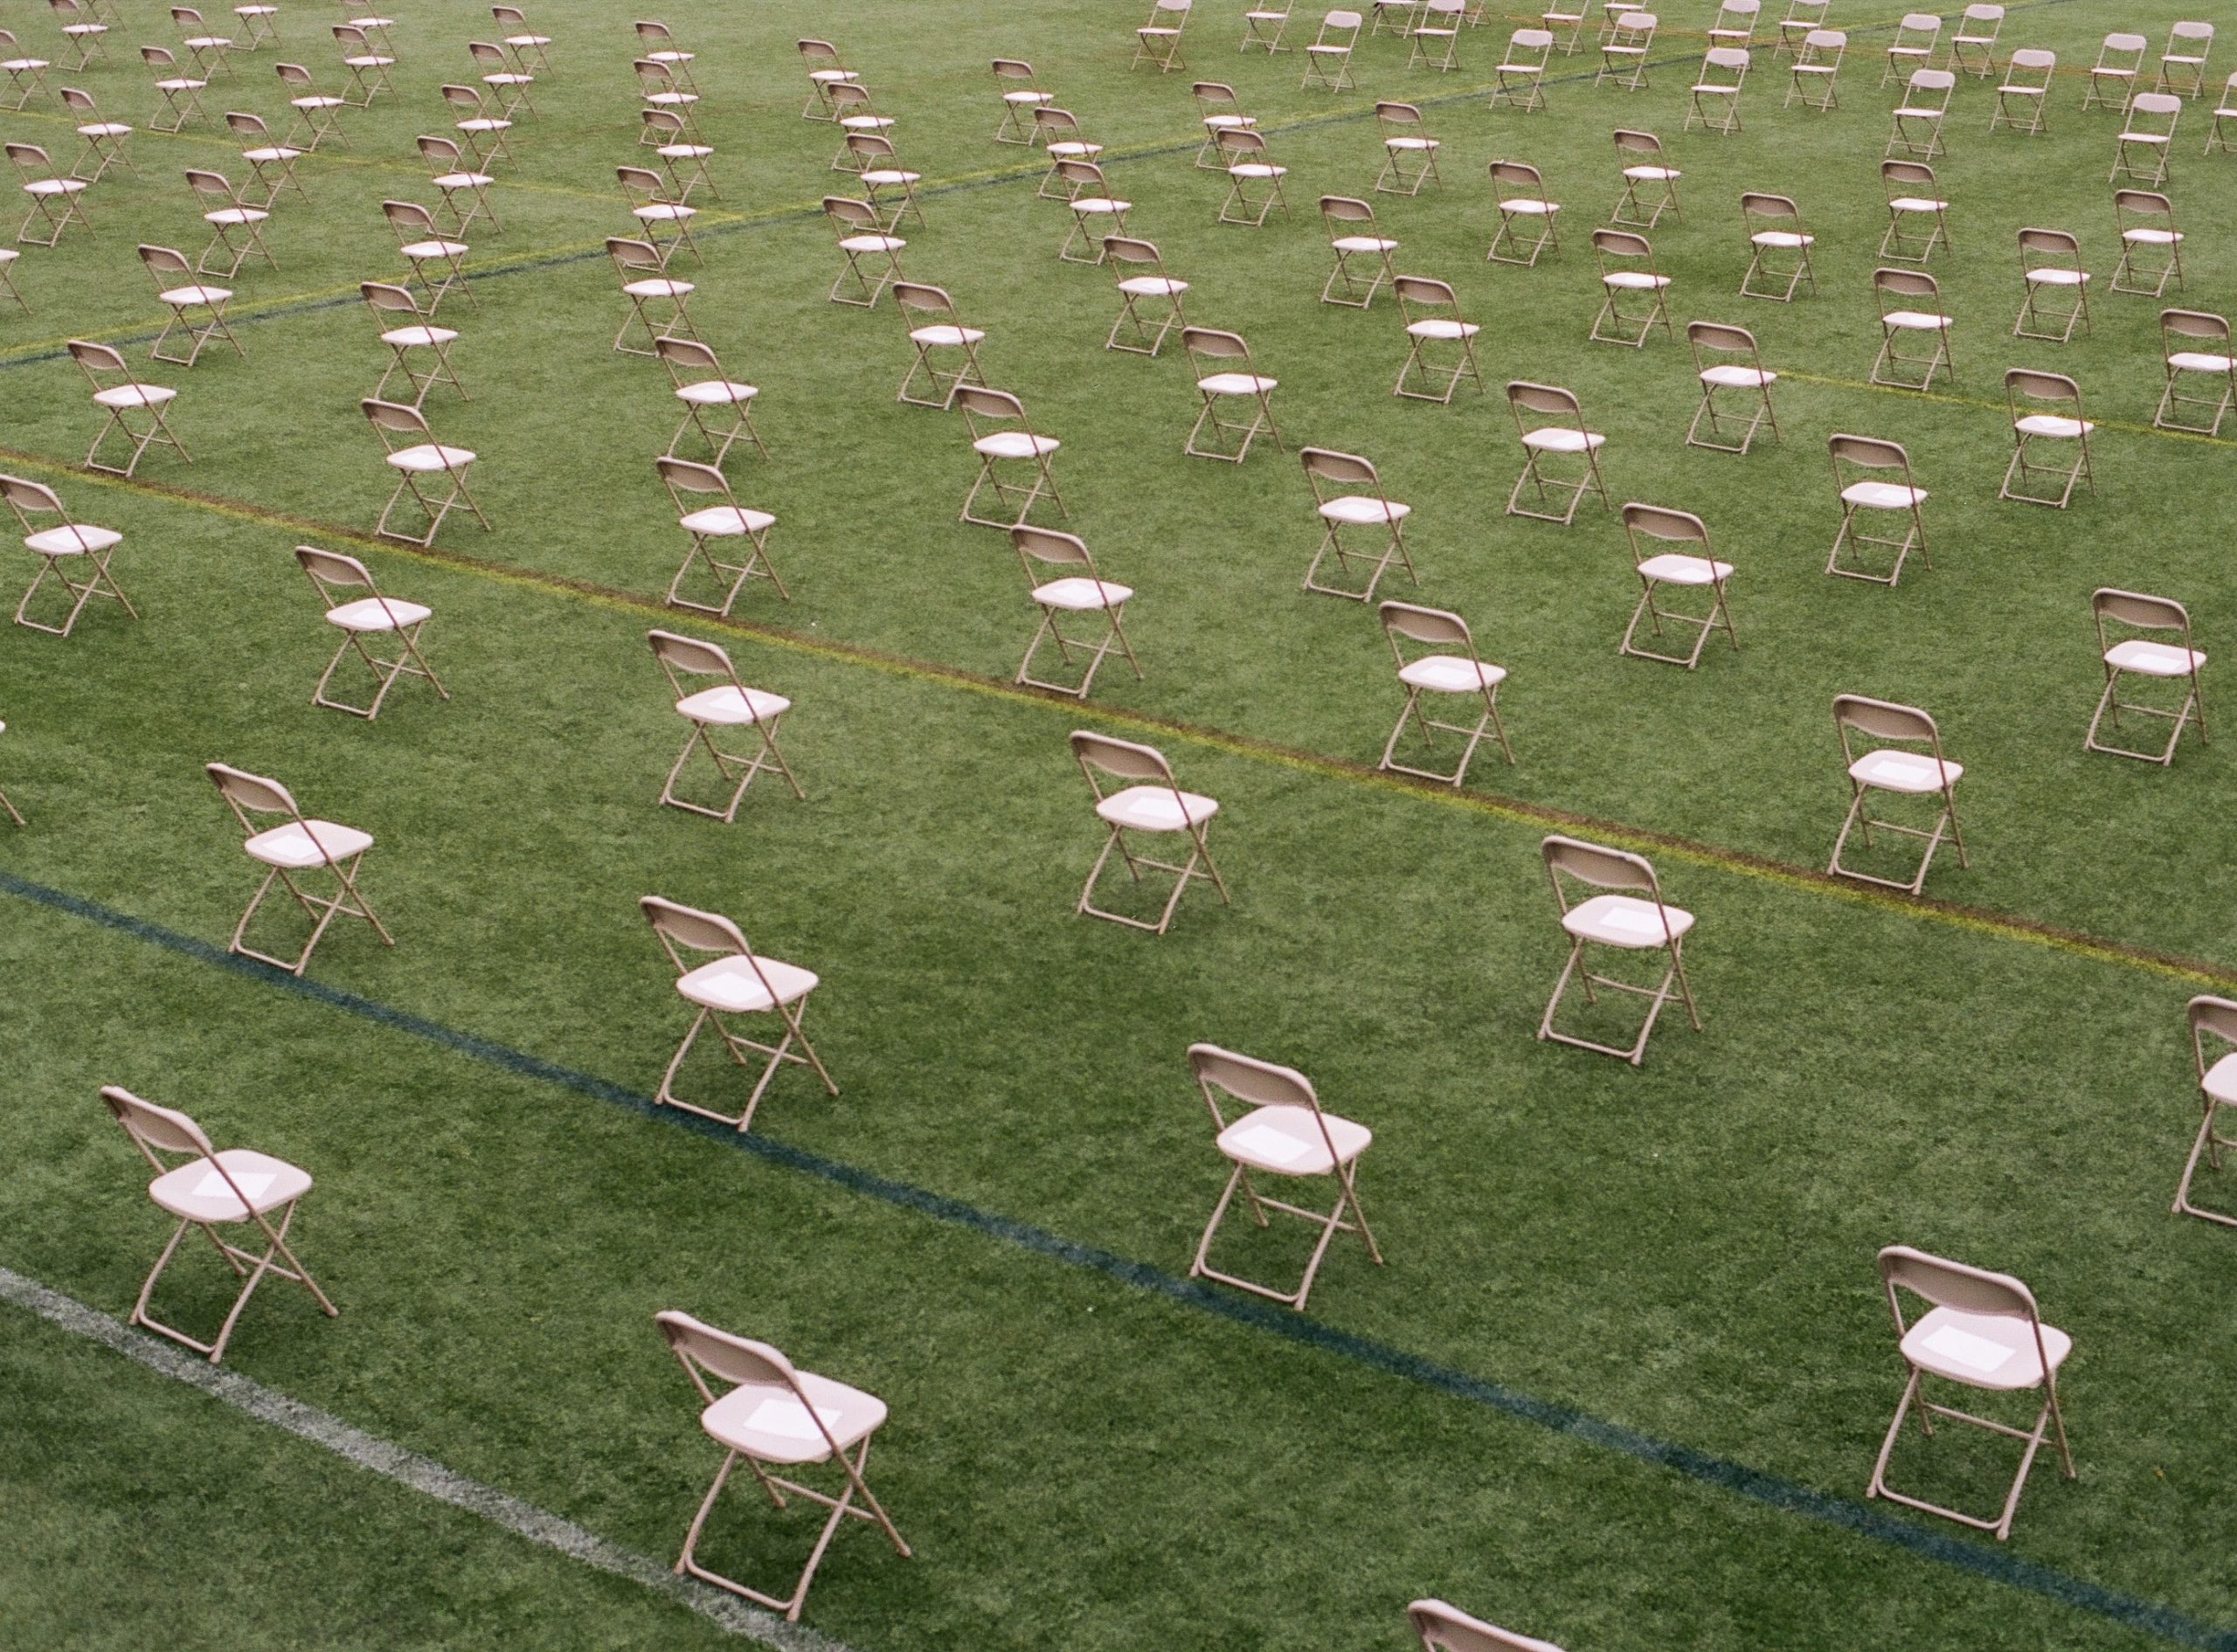 Une photo qui regarde vers le bas plusieurs rangées de chaises de pique-nique roses placées à deux mètres l'une de l'autre et faisant face à l'appareil photo. Les chaises se trouvent sur un terrain de sport extérieur avec des lignes blanches, bleues, jaunes et rouges peintes sur l'herbe.